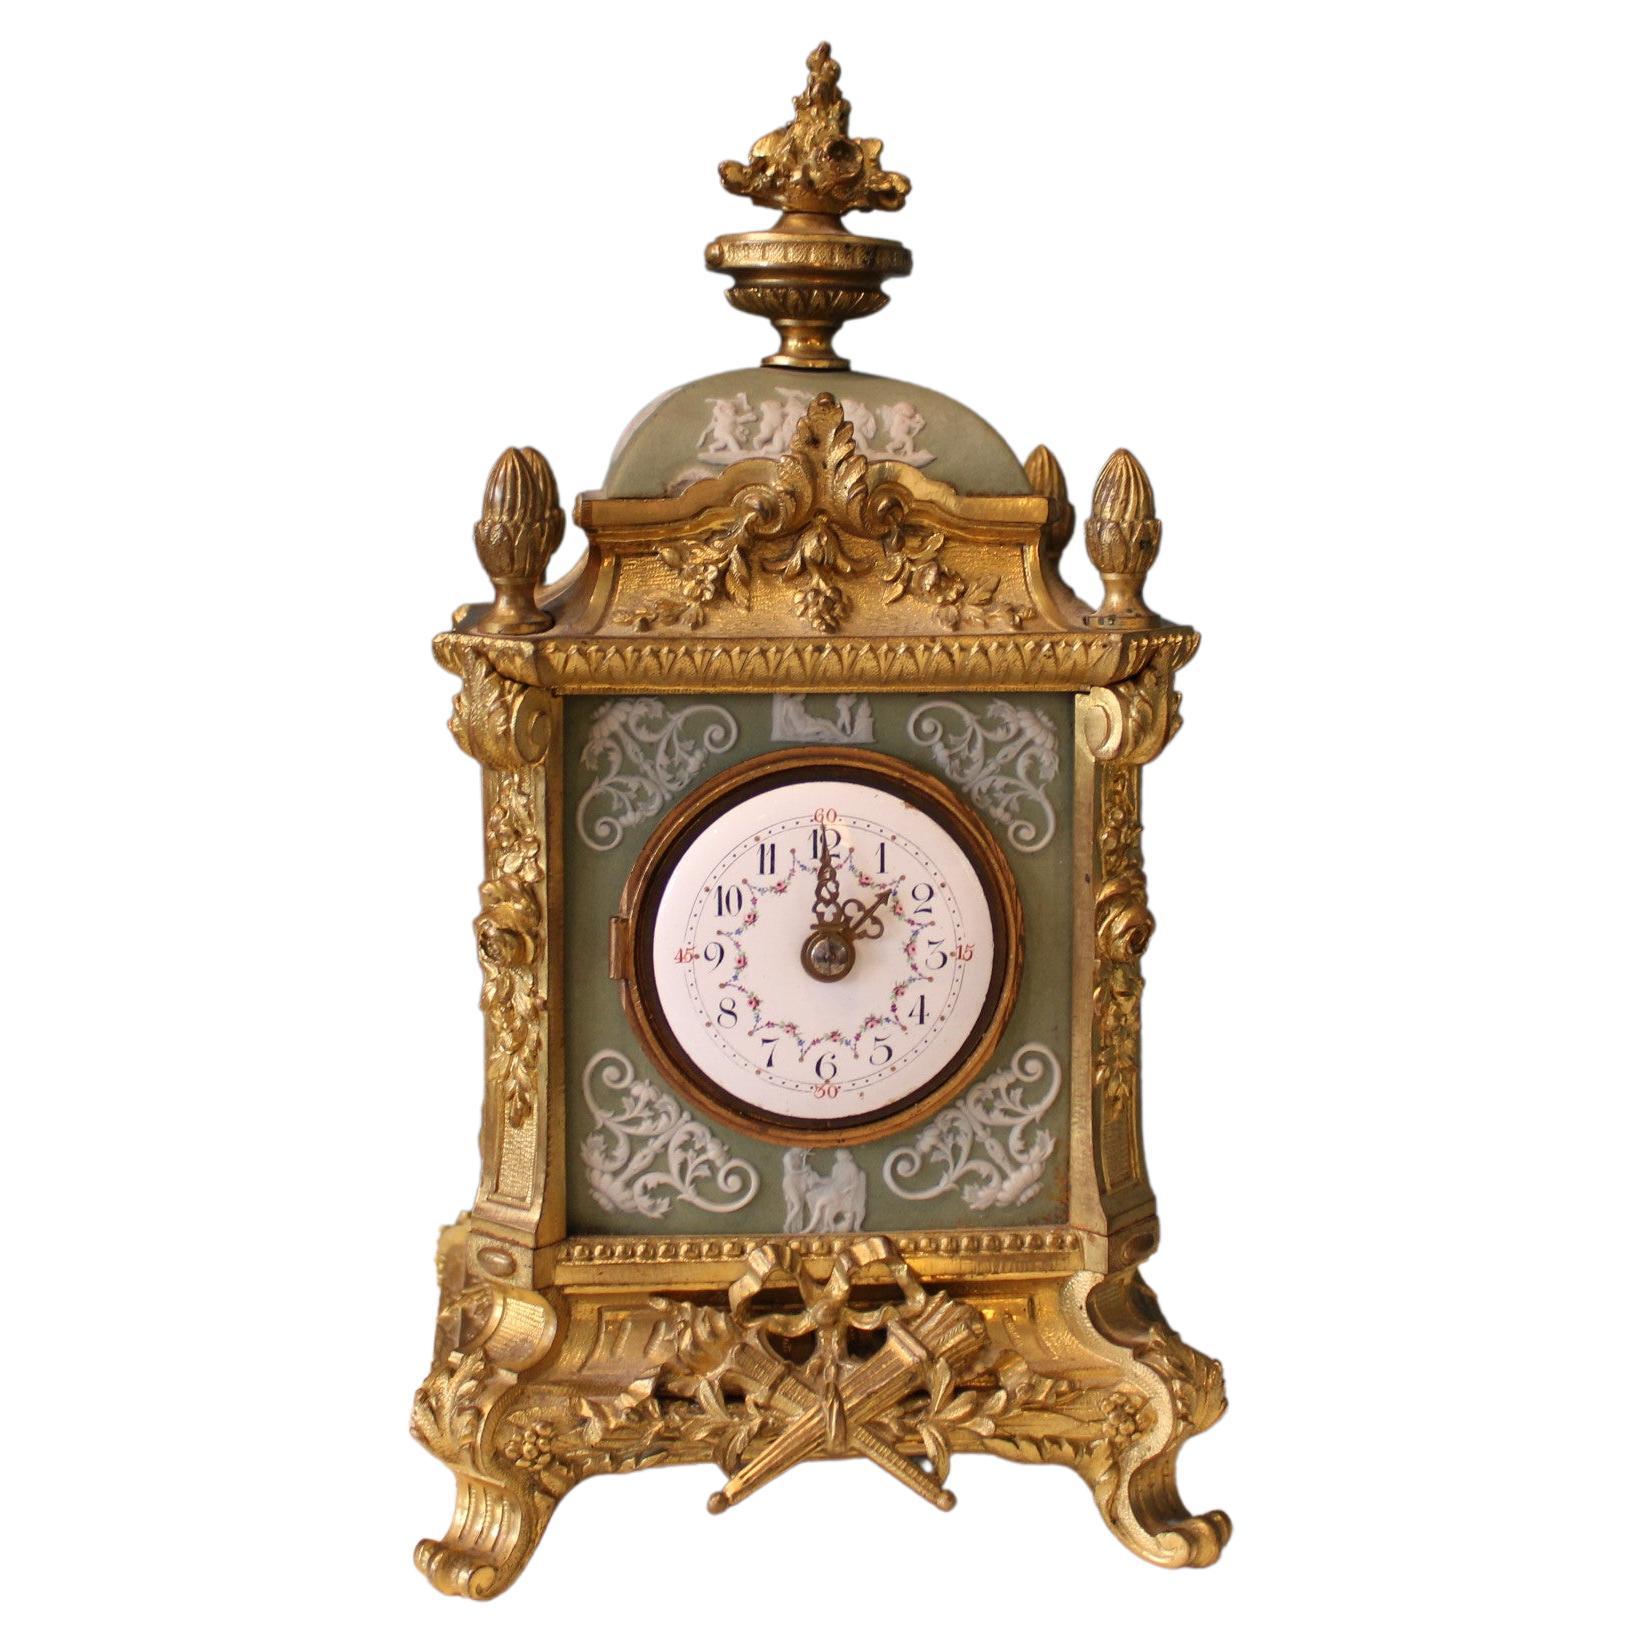 Horloge napoléonienne, France, 19e siècle